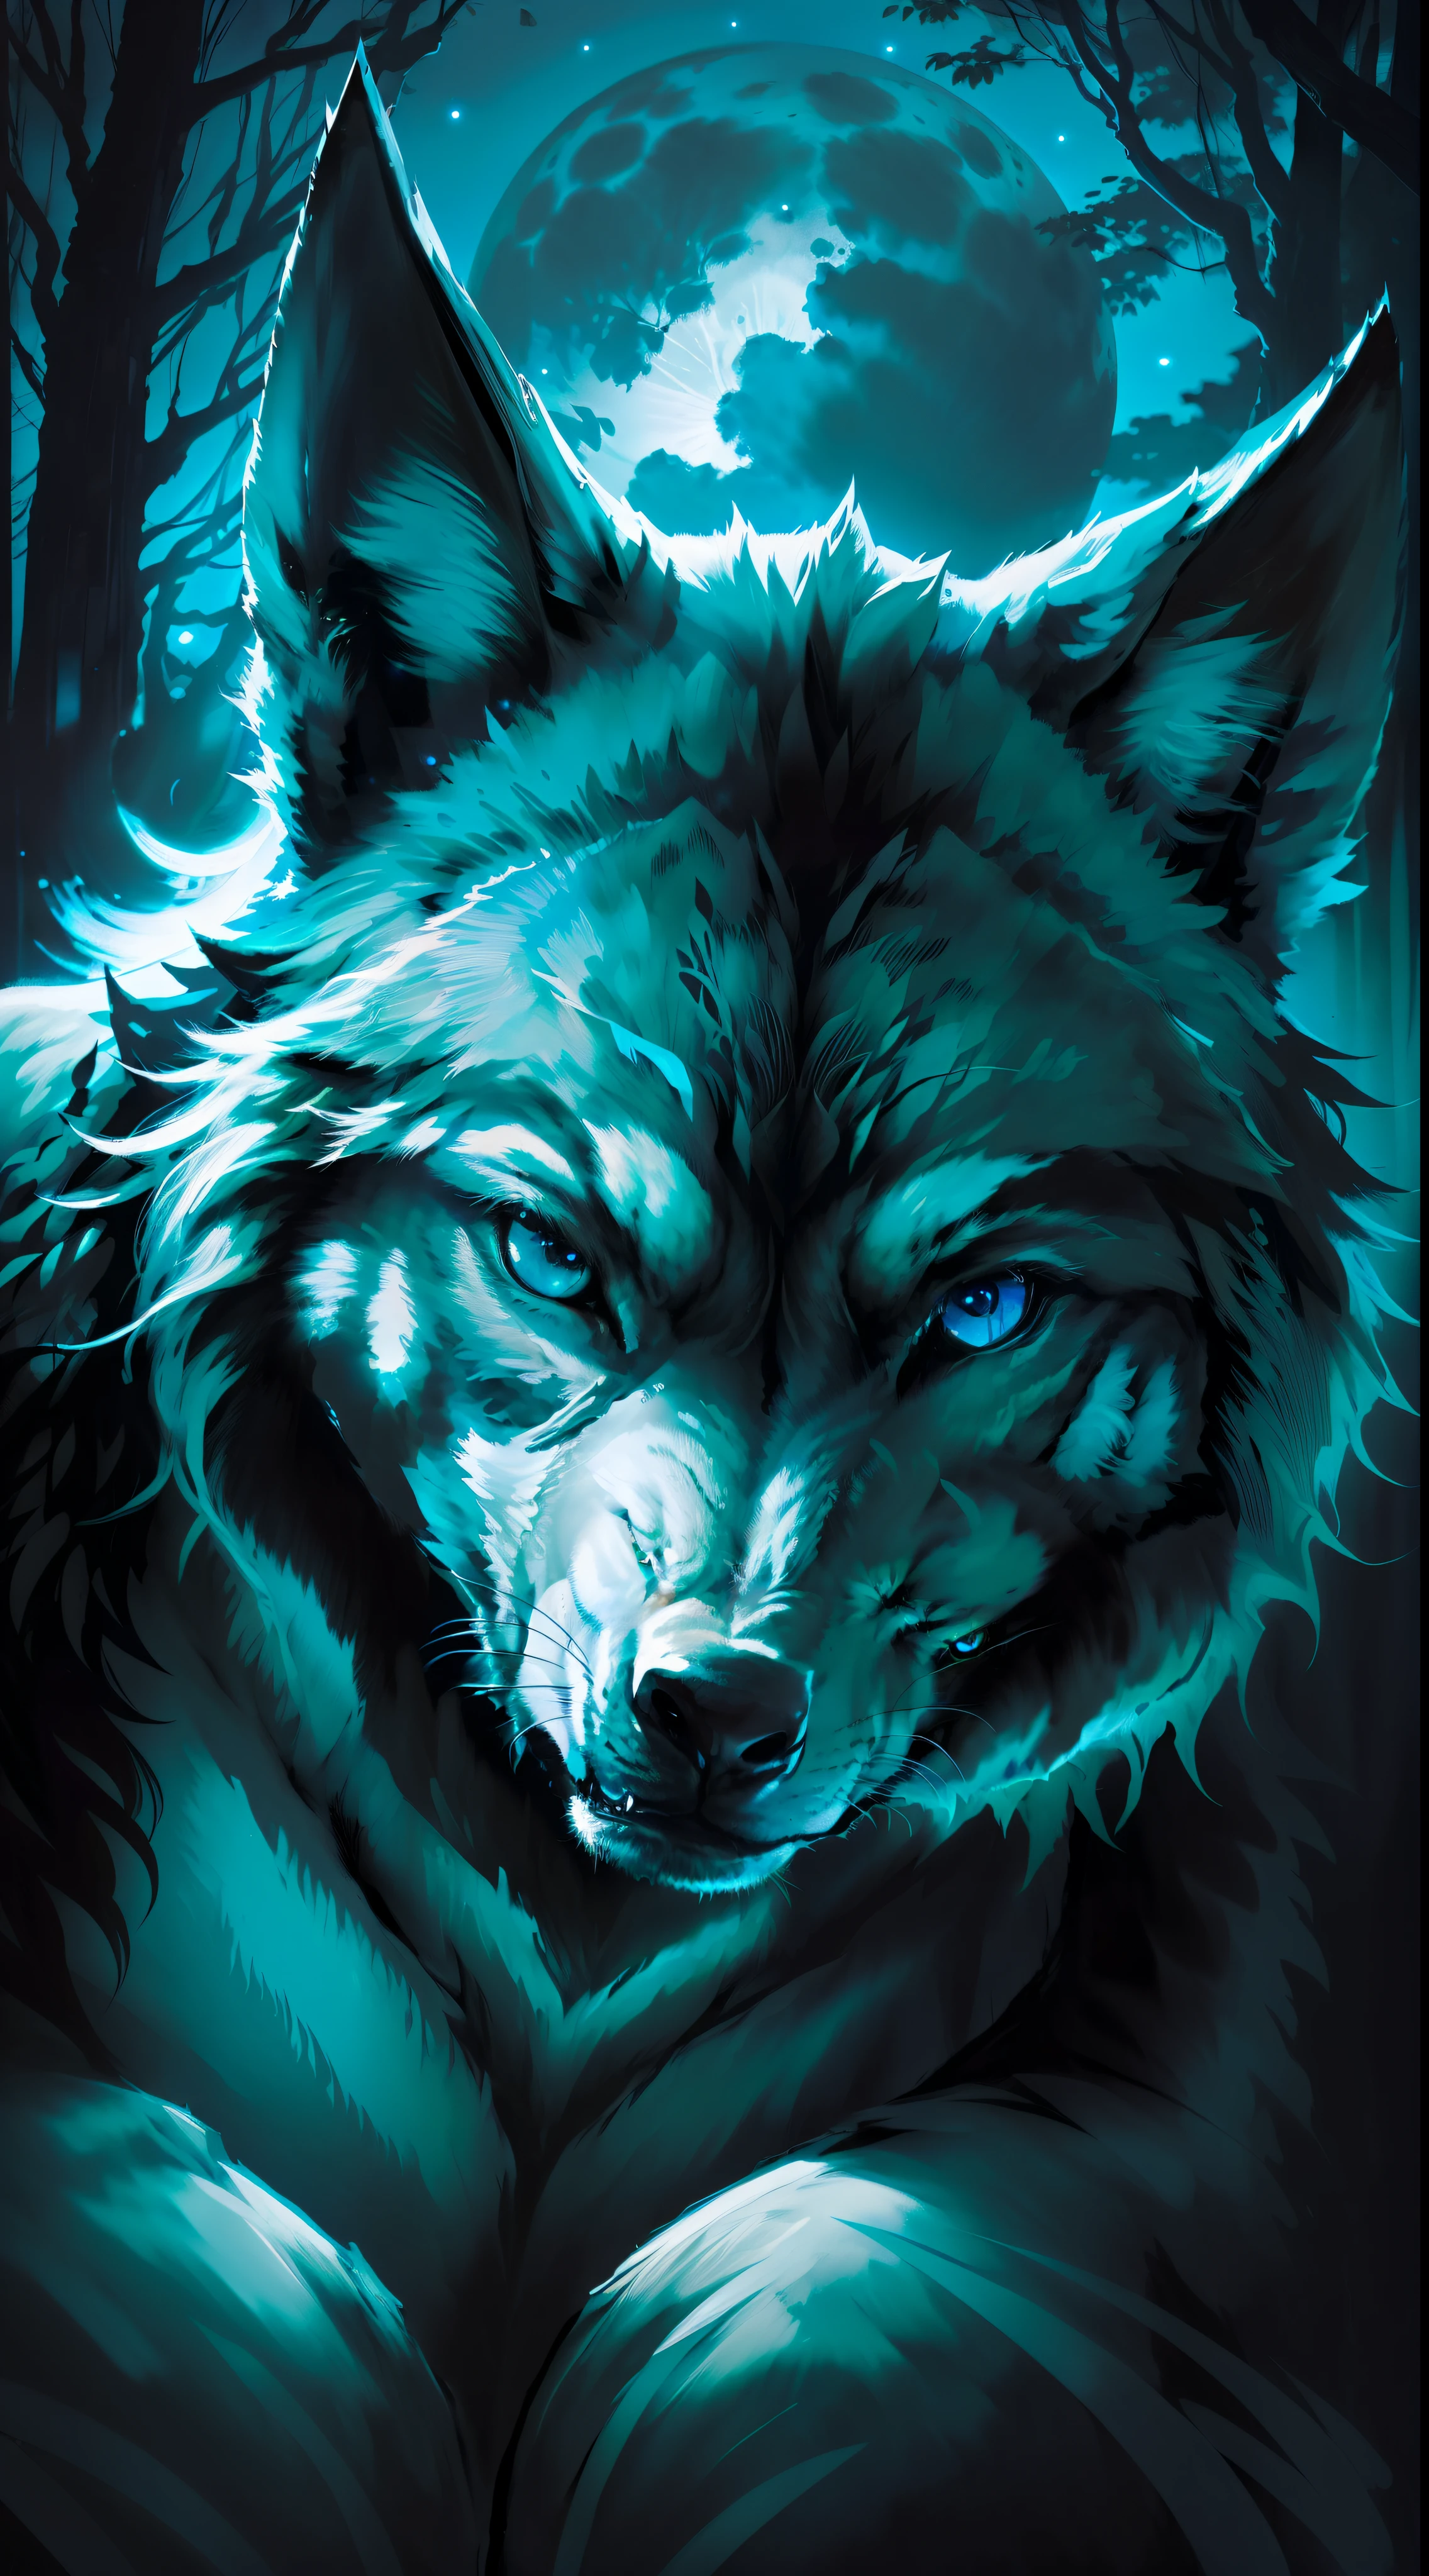 (杰作细节丰富的高画质) "黑色，蓝眼睛" 狼 危险 森林, 午夜, 满月. 1 个单瓣. ( 图像前角) ( 打开图片) 黑狼颜色.